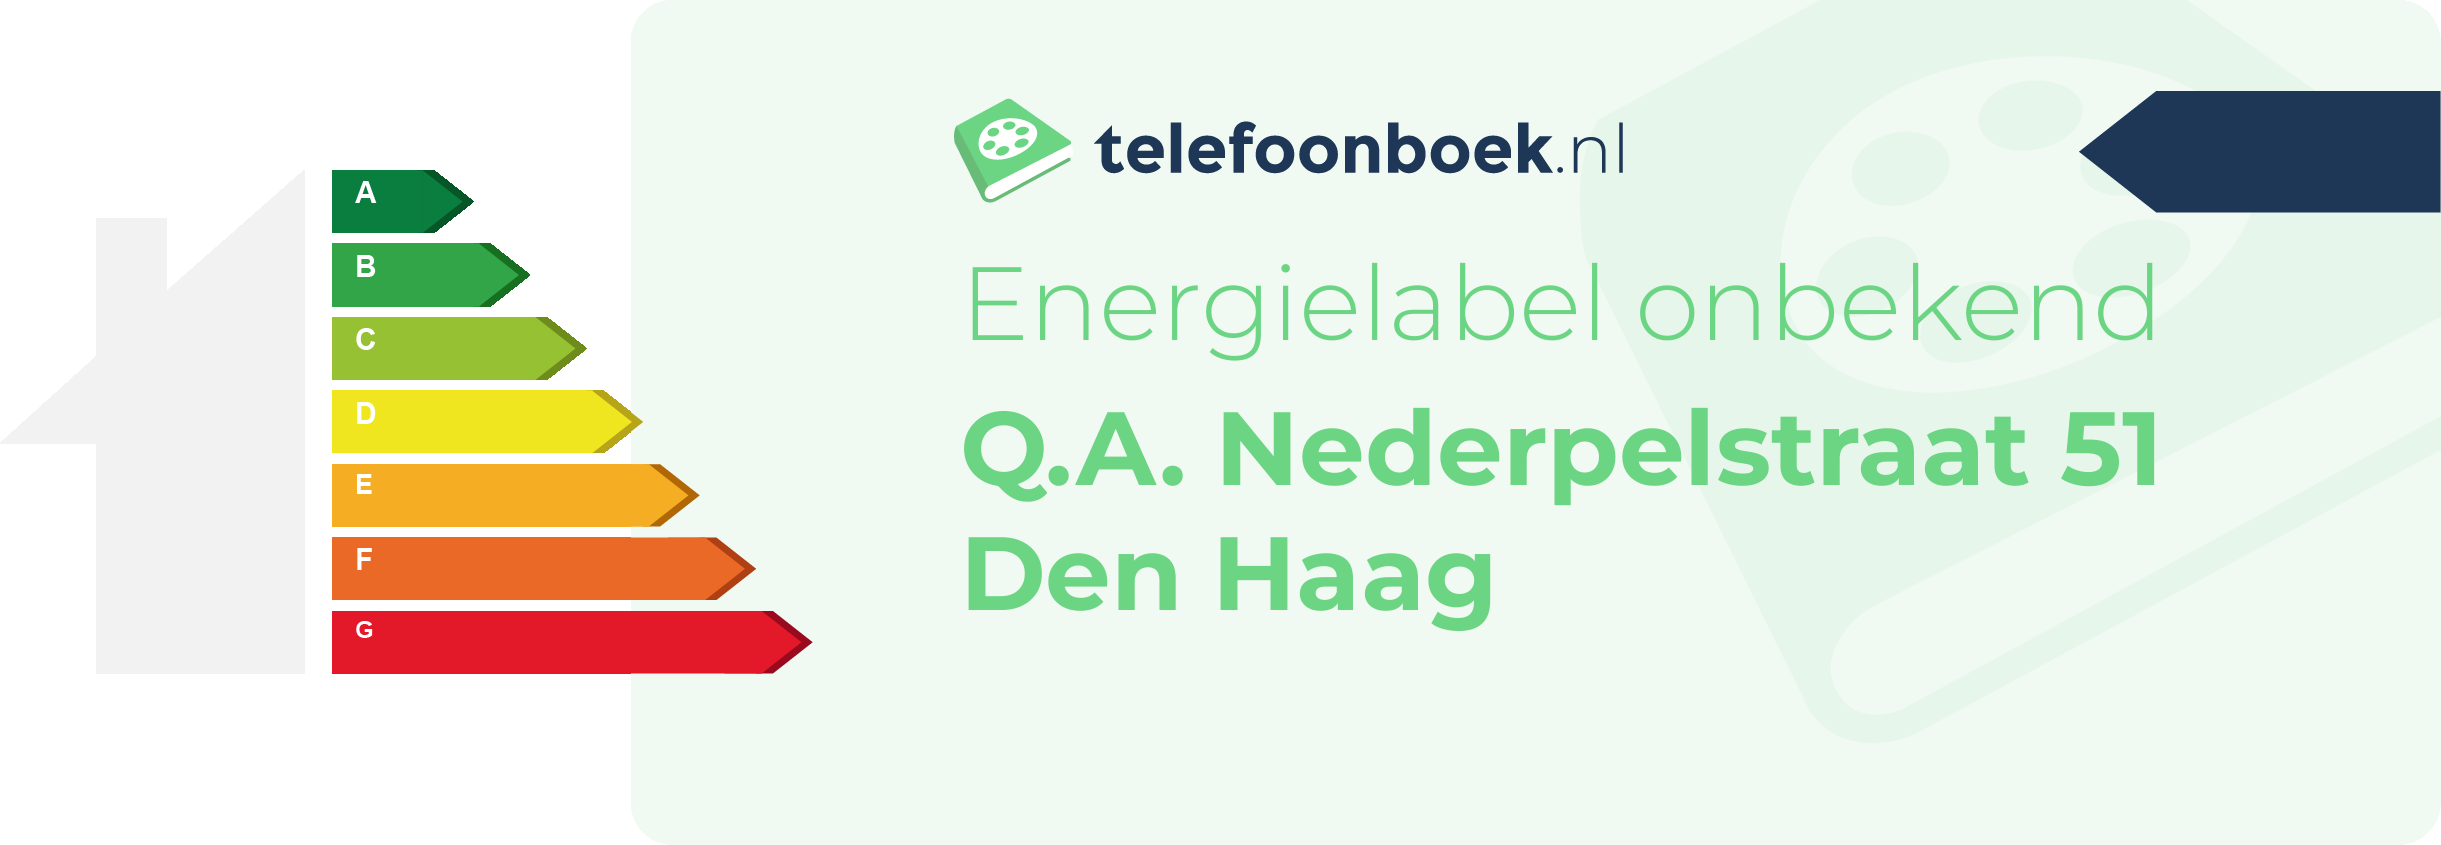 Energielabel Q.A. Nederpelstraat 51 Den Haag